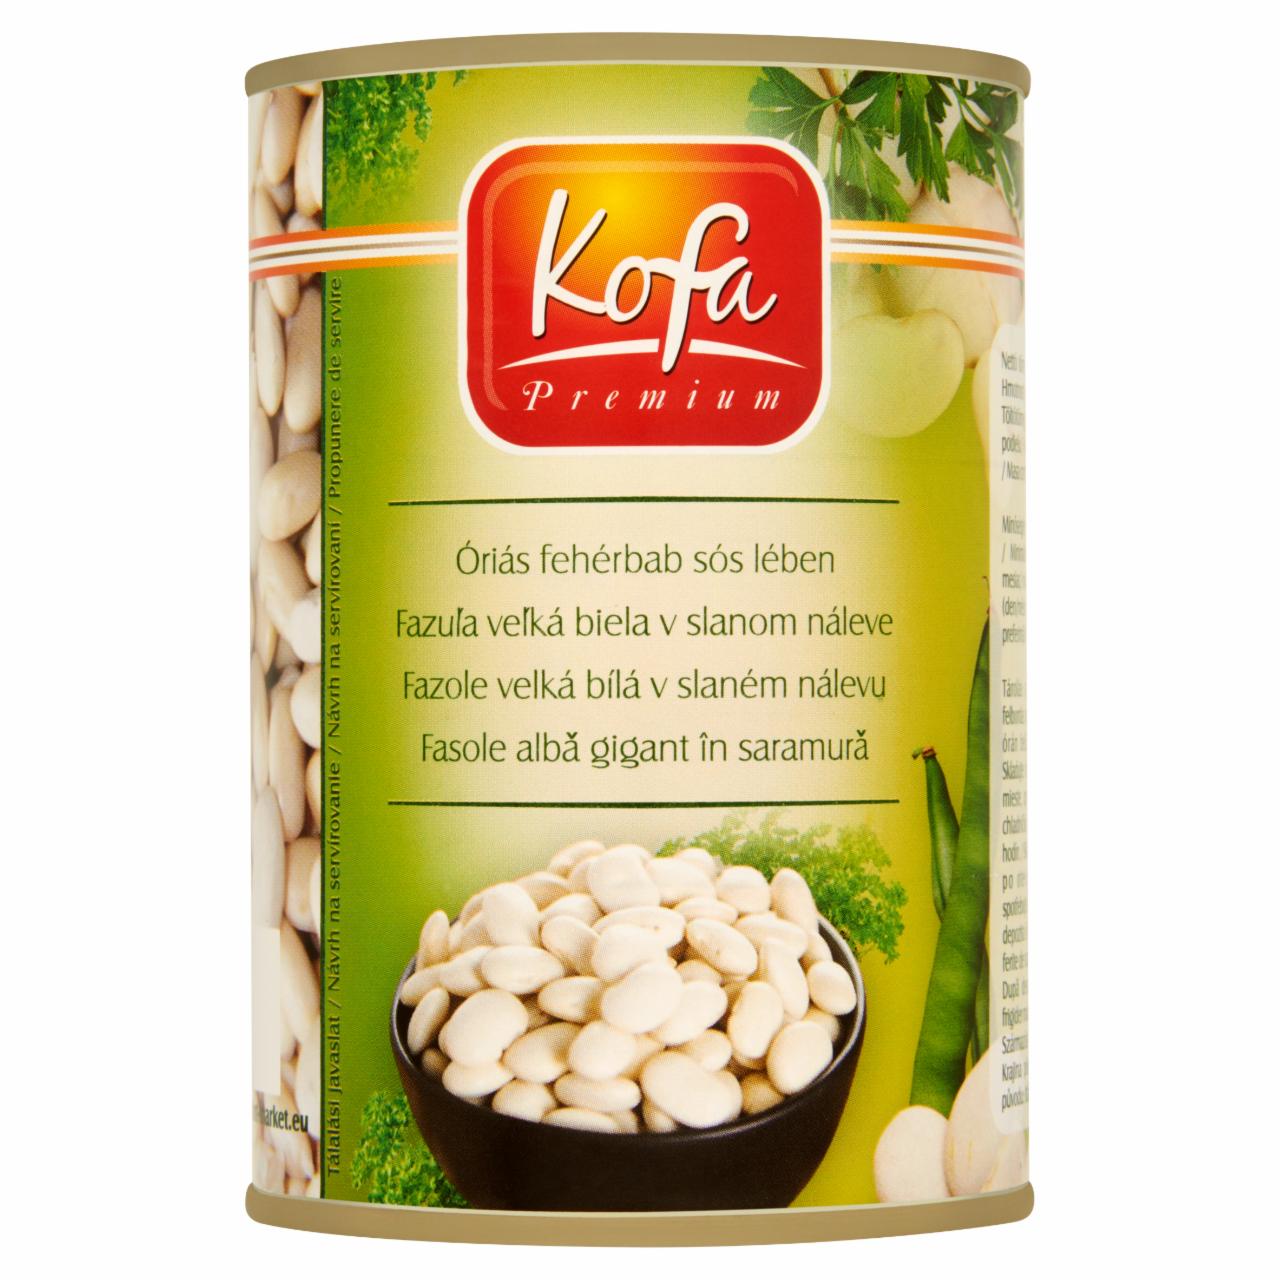 Képek - Kofa Premium óriás fehérbab sós lében 400 g